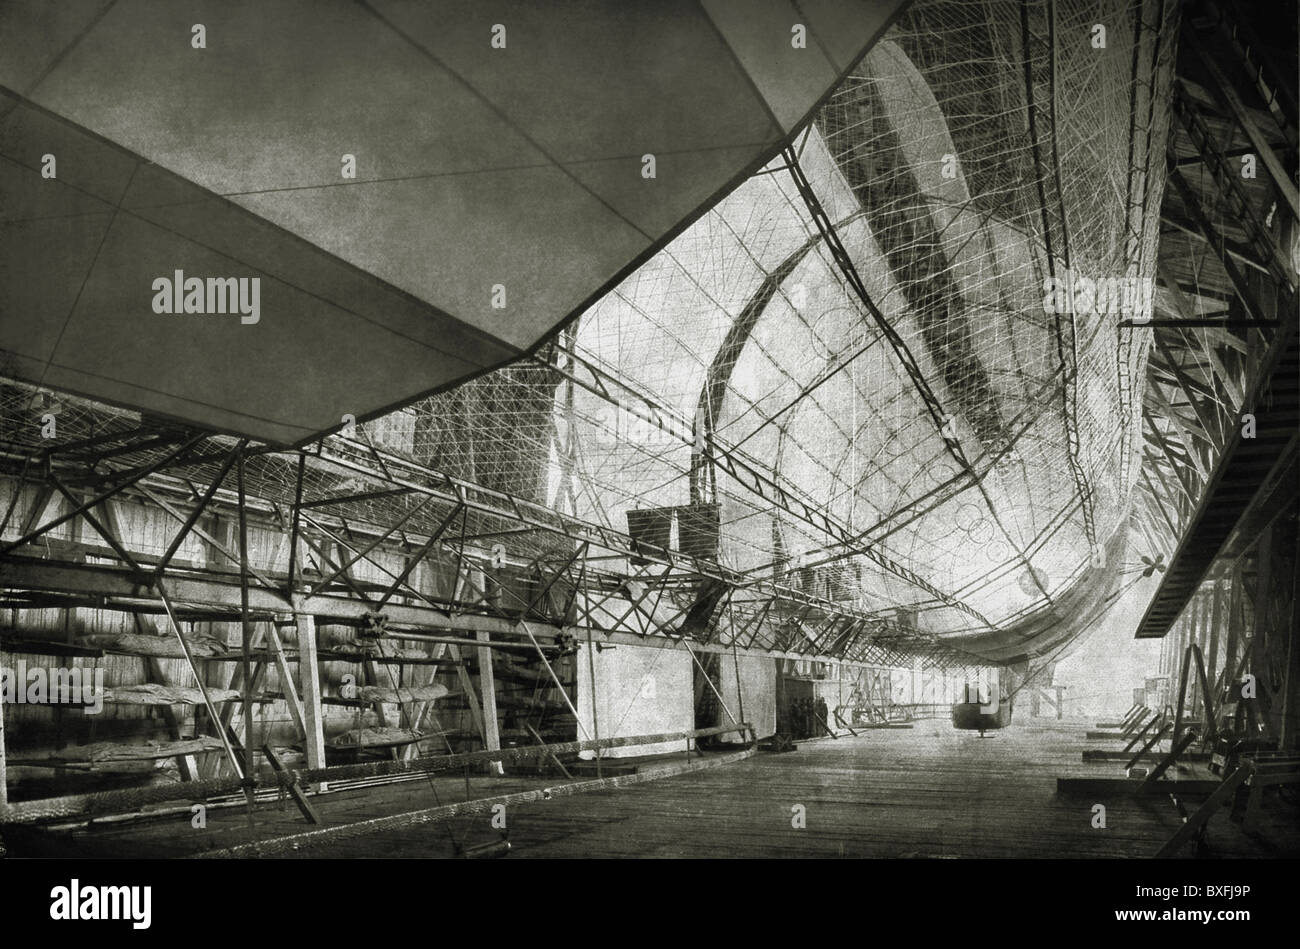 Transport / transport, aviation, navires, construction du premier zeppelin, squelette d'aluminium de navire, 128 m, système Graf Zeppelin, près de Manzell, Allemagne, printemps 1900, droits additionnels-Clearences-non disponible Banque D'Images